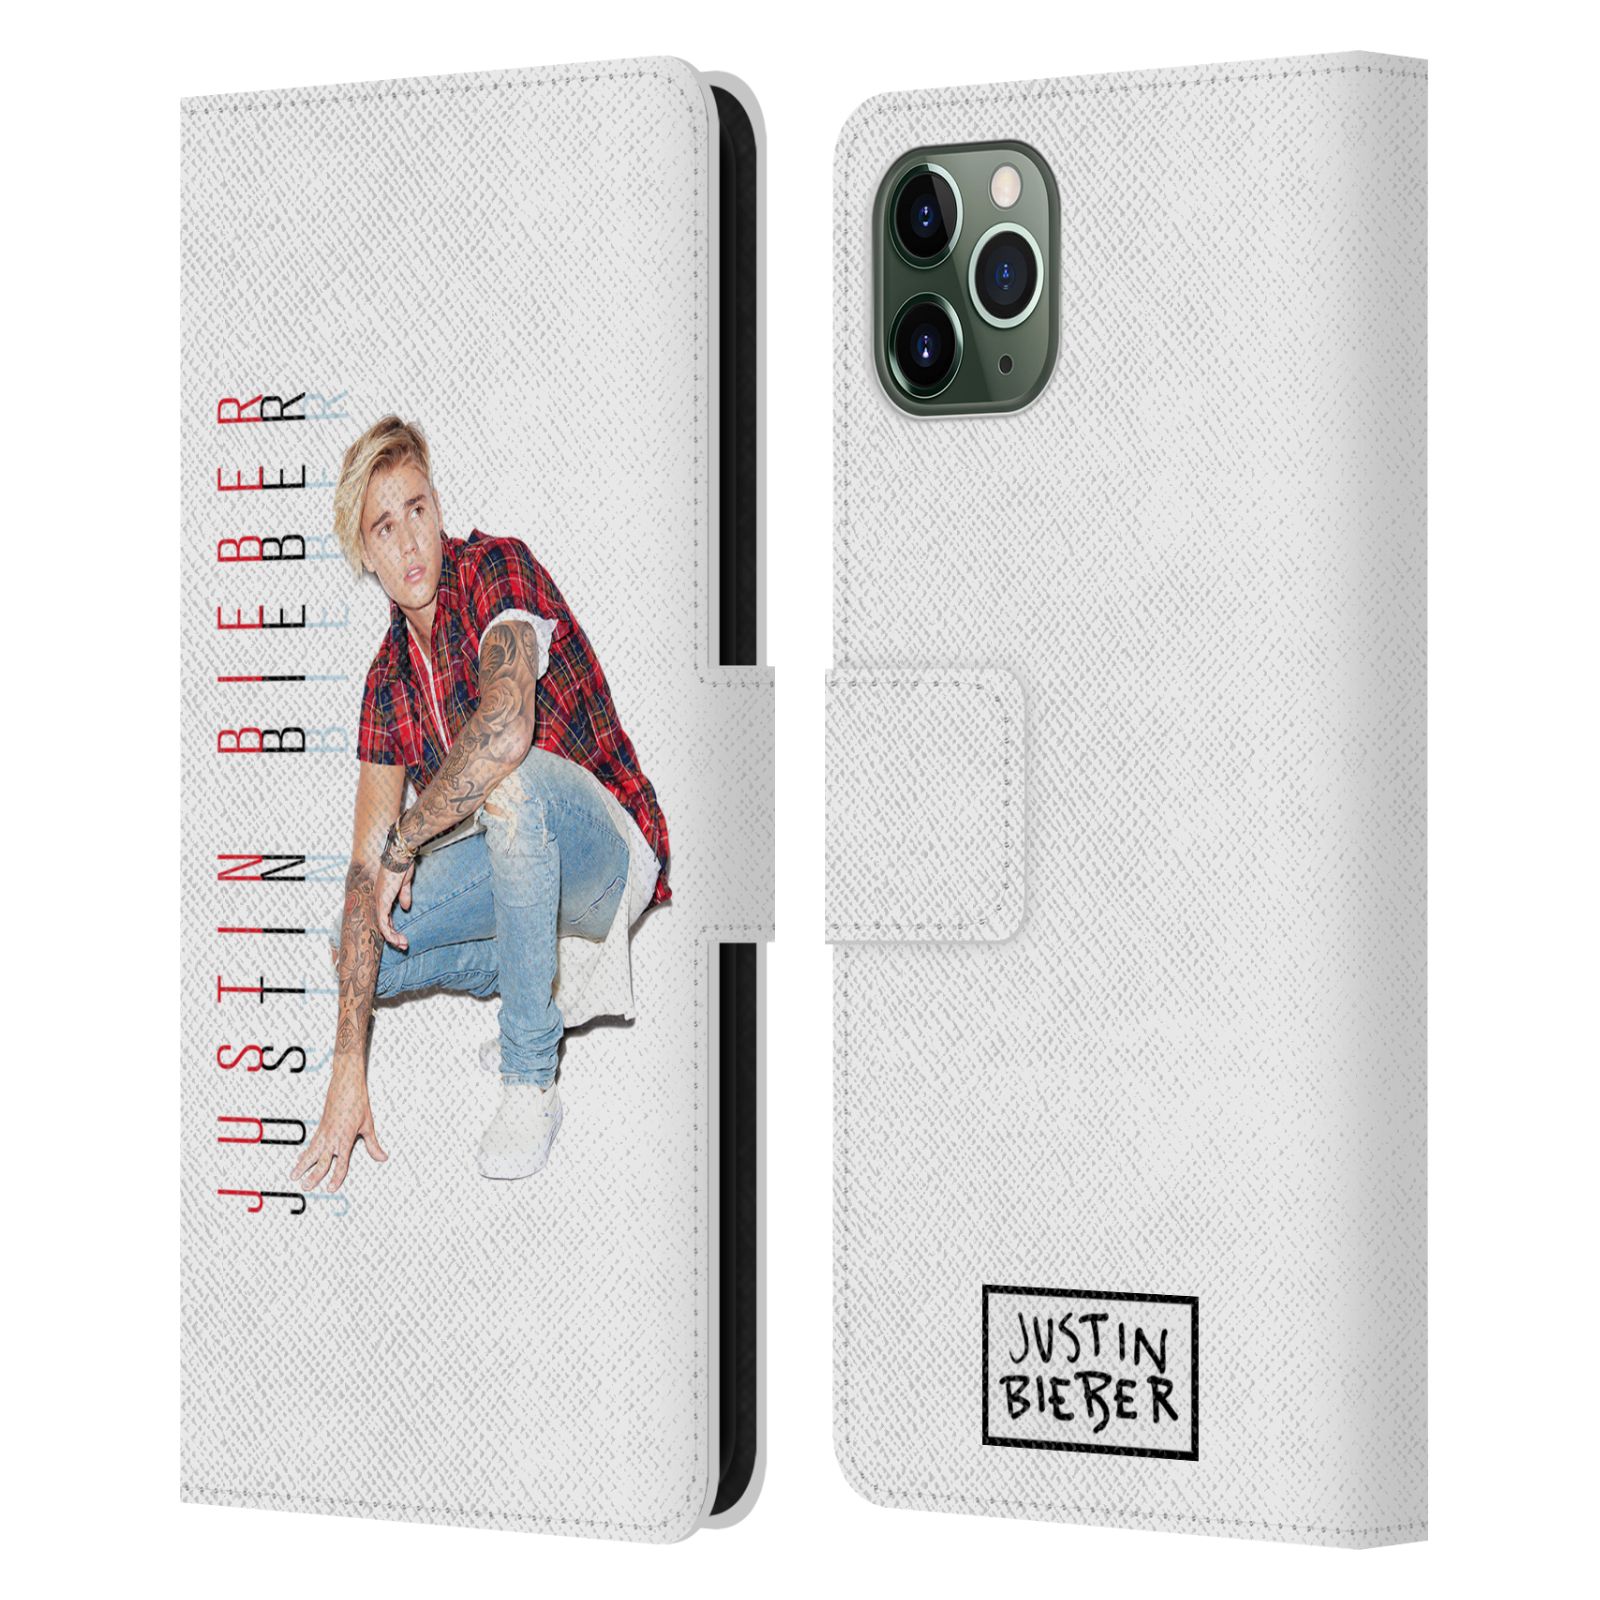 Pouzdro na mobil Apple Iphone 11 PRO MAX - Head Case - Justin Bieber - Foto a tex